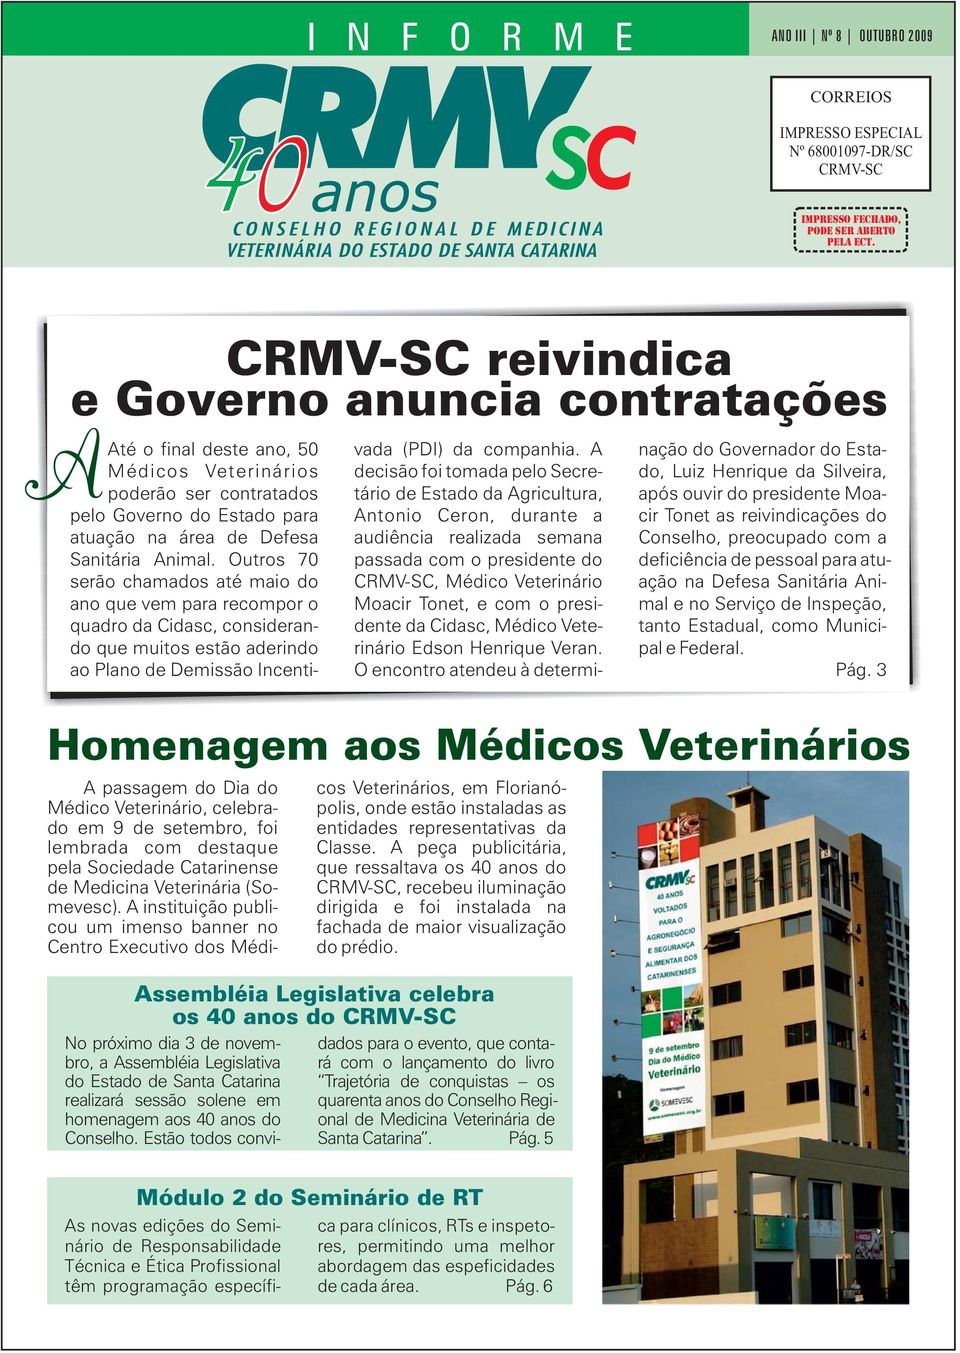 (Somevesc). A instituição publicou um imenso banner no Centro Executivo dos Médicos Veterinários, em Florianópolis, onde estão instaladas as entidades representativas da Classe.